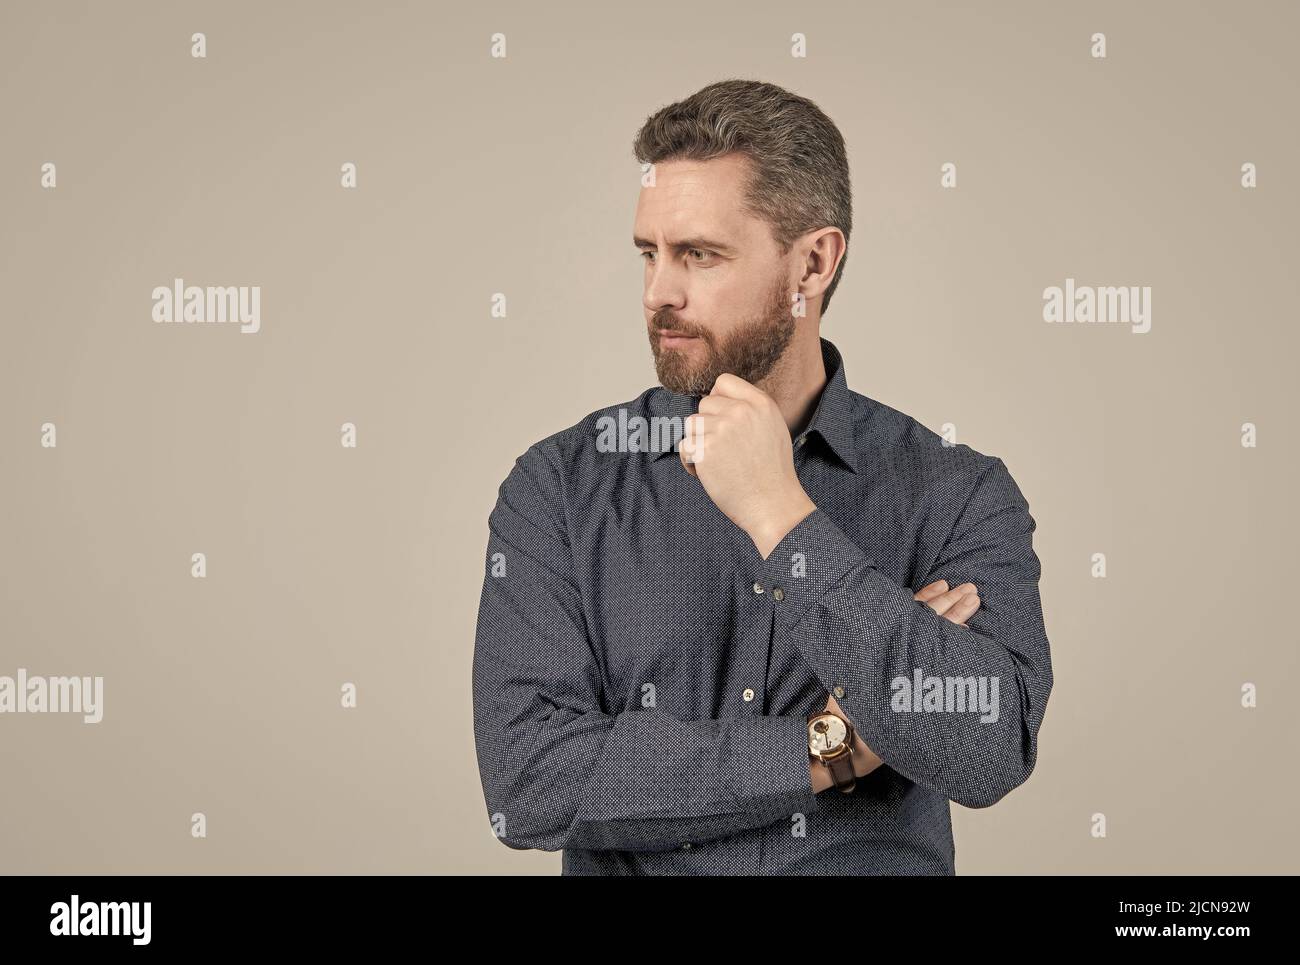 Unrasiert Mann mit stilvollen Bart Haarform sehen ernst in lässigen Stil Hemd, Barbering, Copy Space Stockfoto